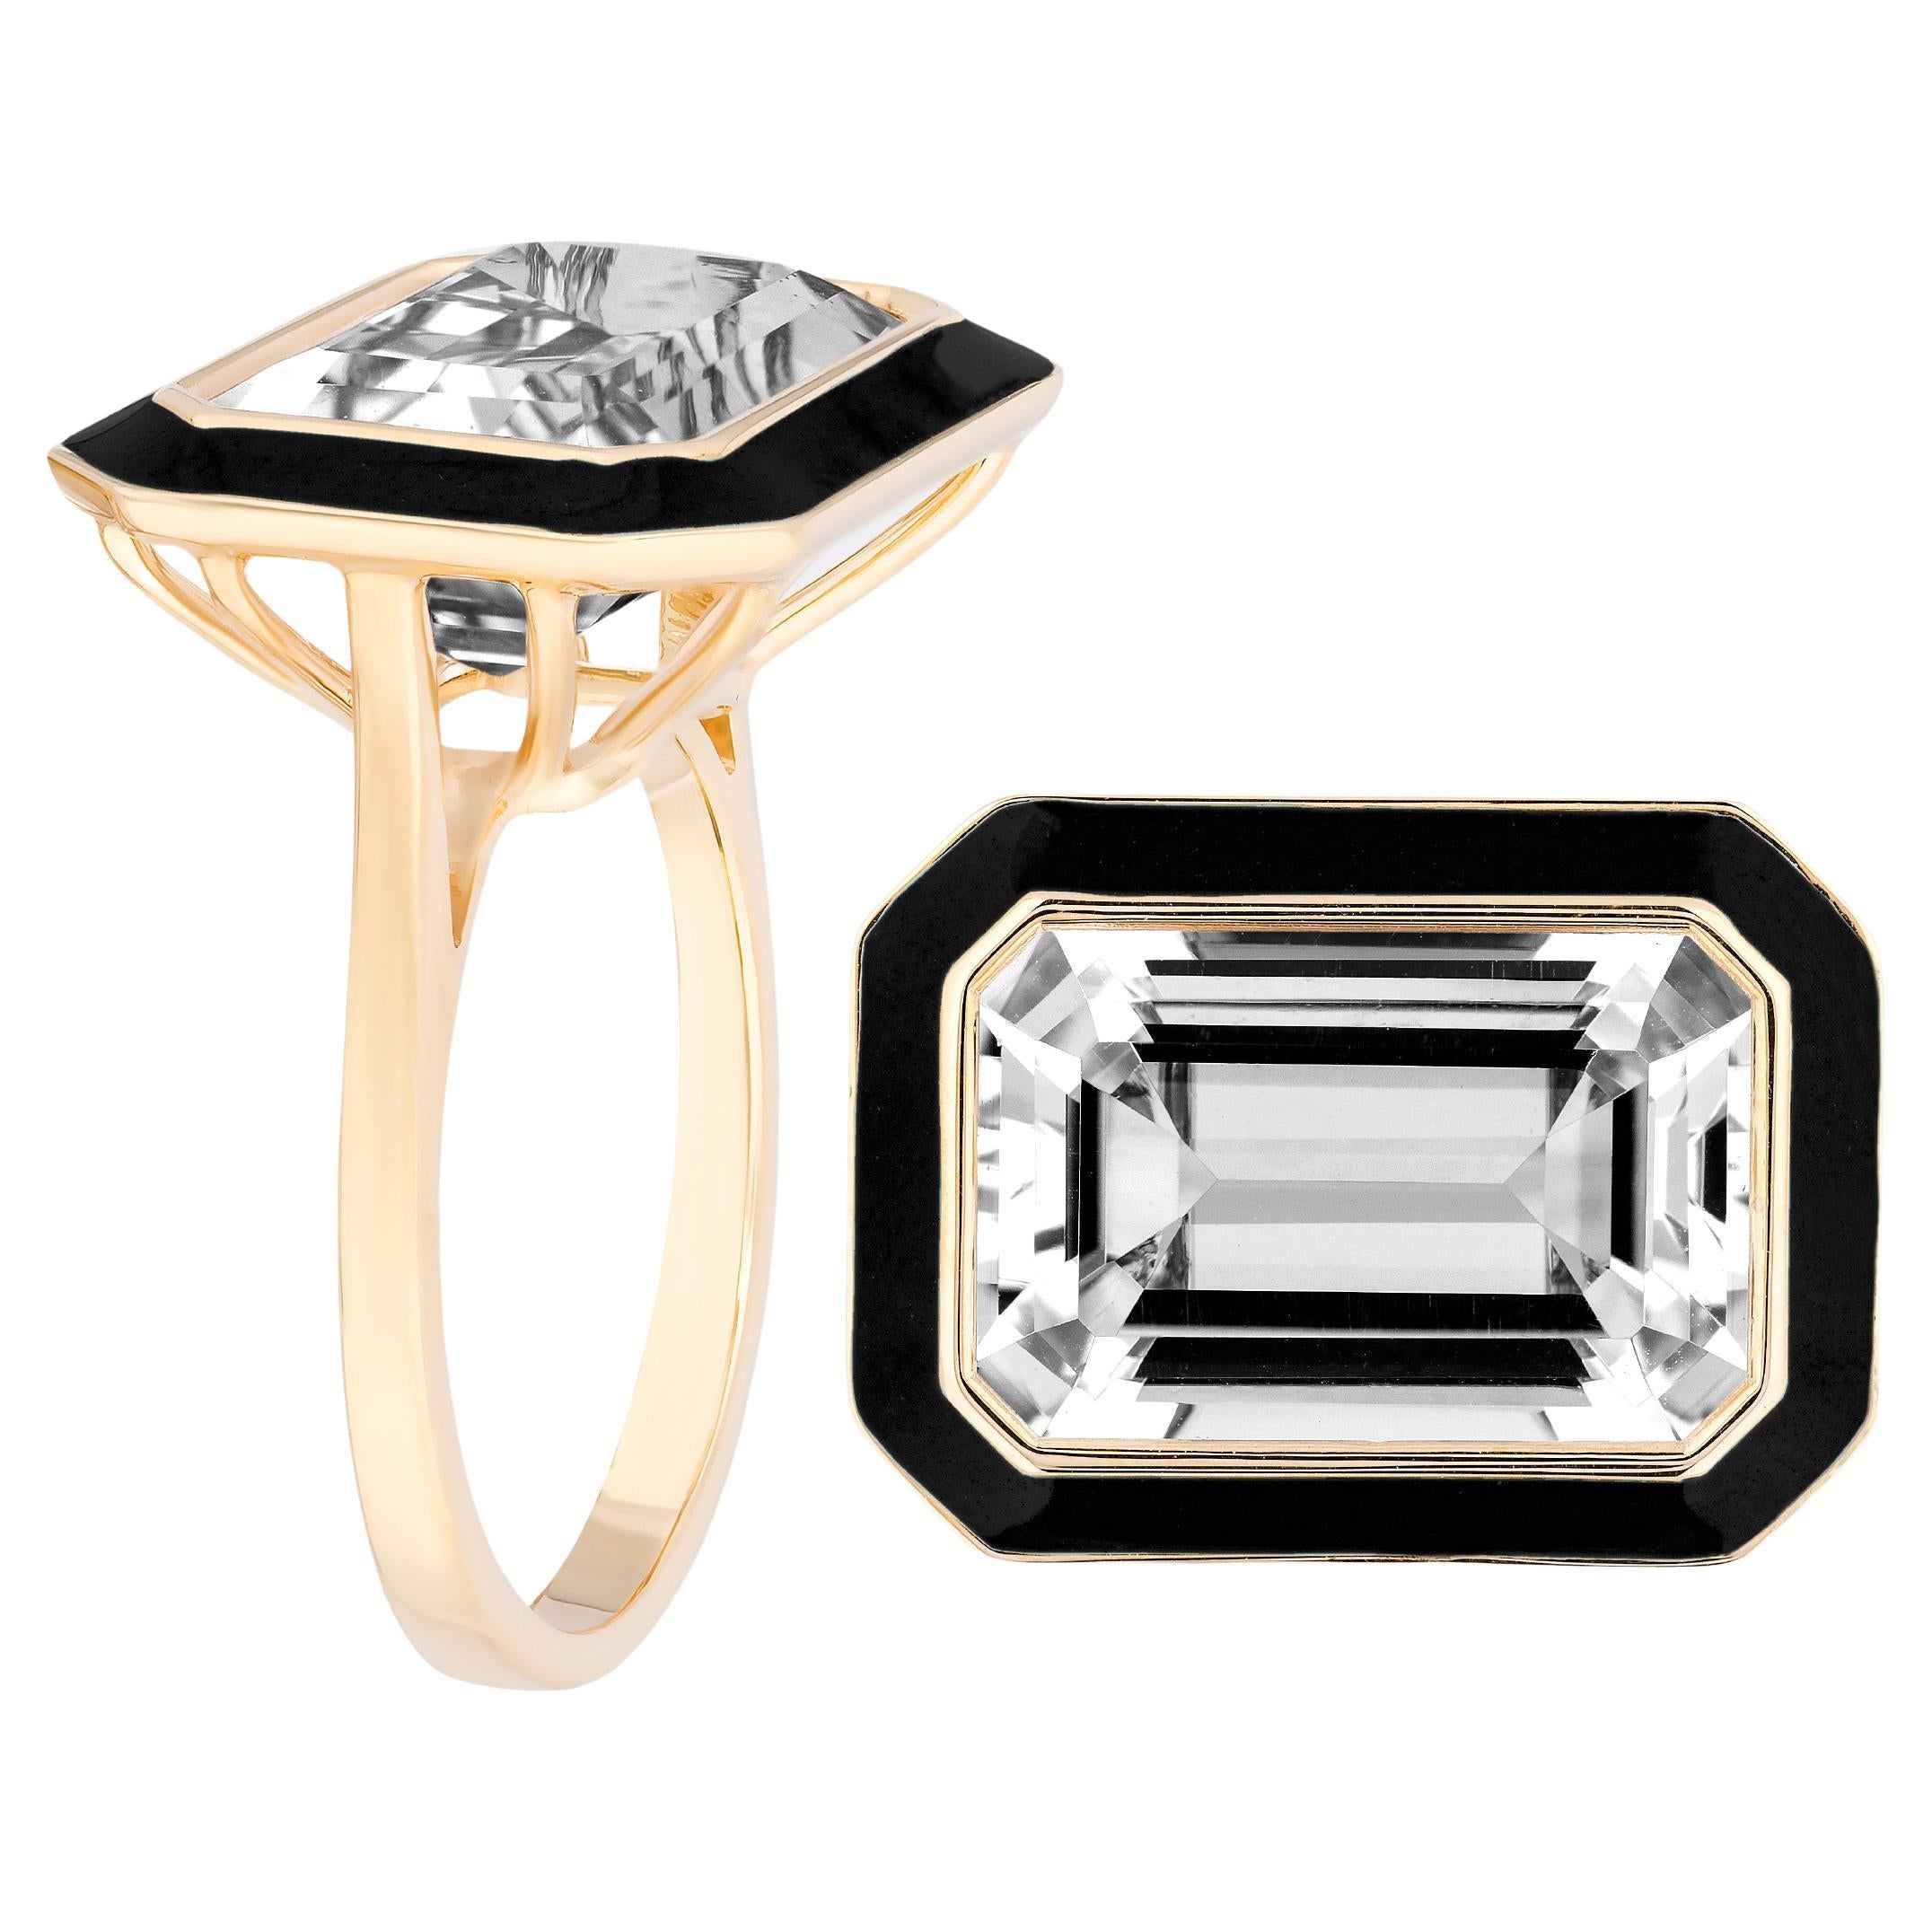 Goshwara East-West Rock Crystal Ring with Black Enamel For Sale